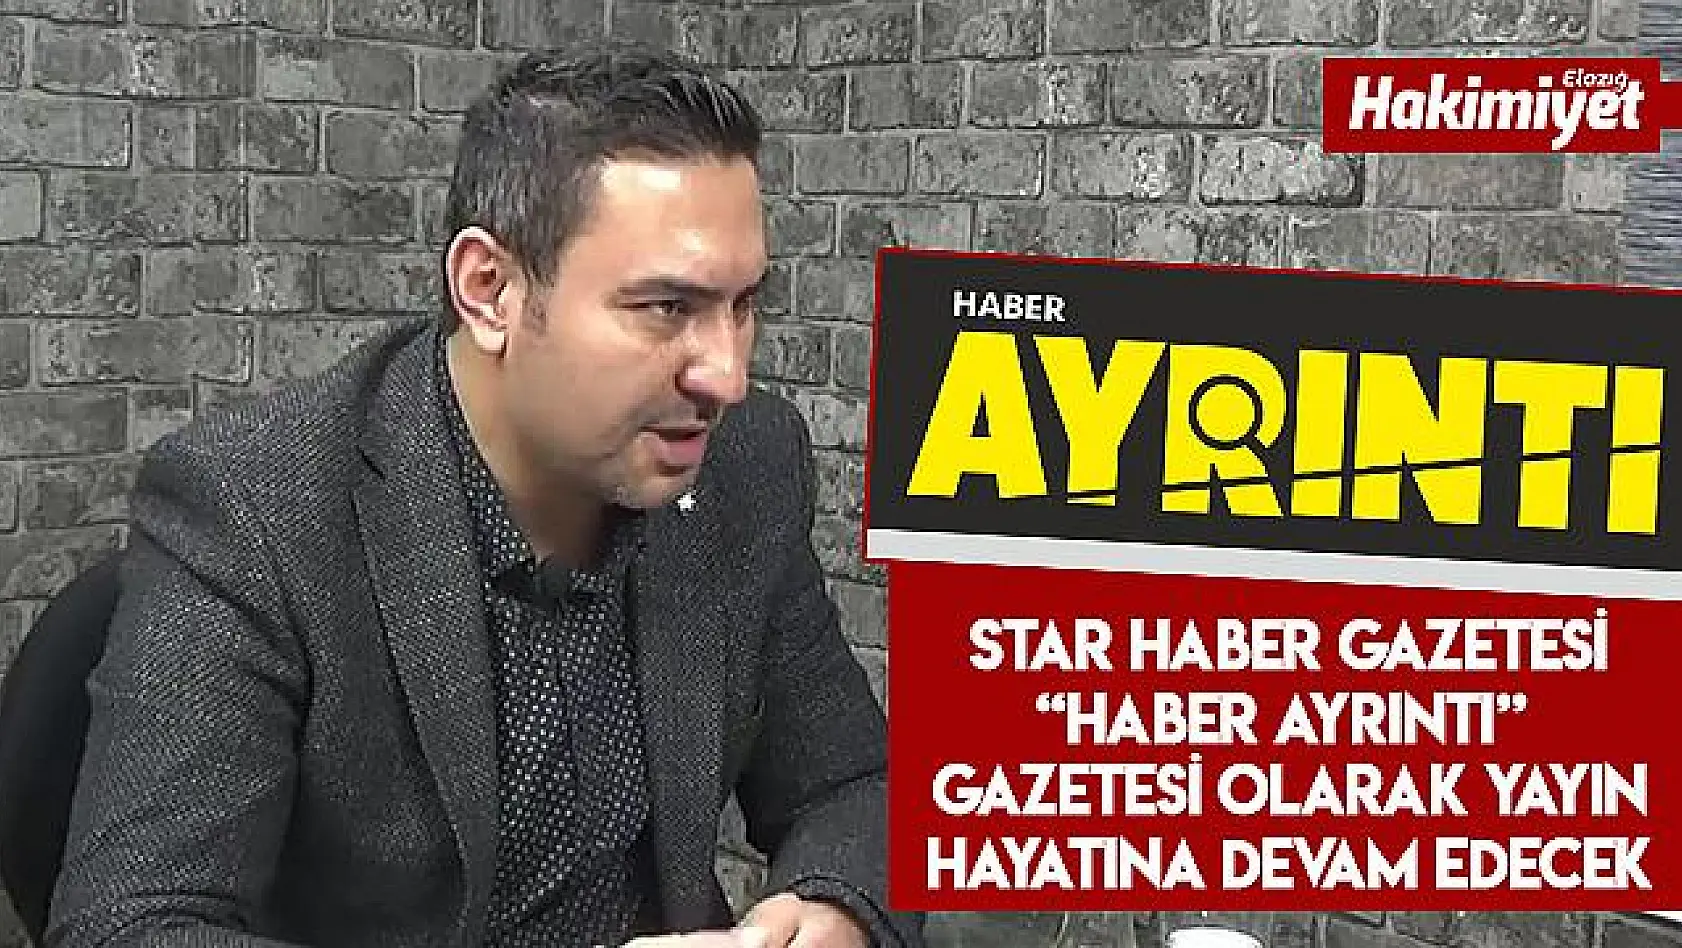 Elazığ Star Haber Gazetesi 'Haber Ayrıntı' İsmiyle Devam Edecek